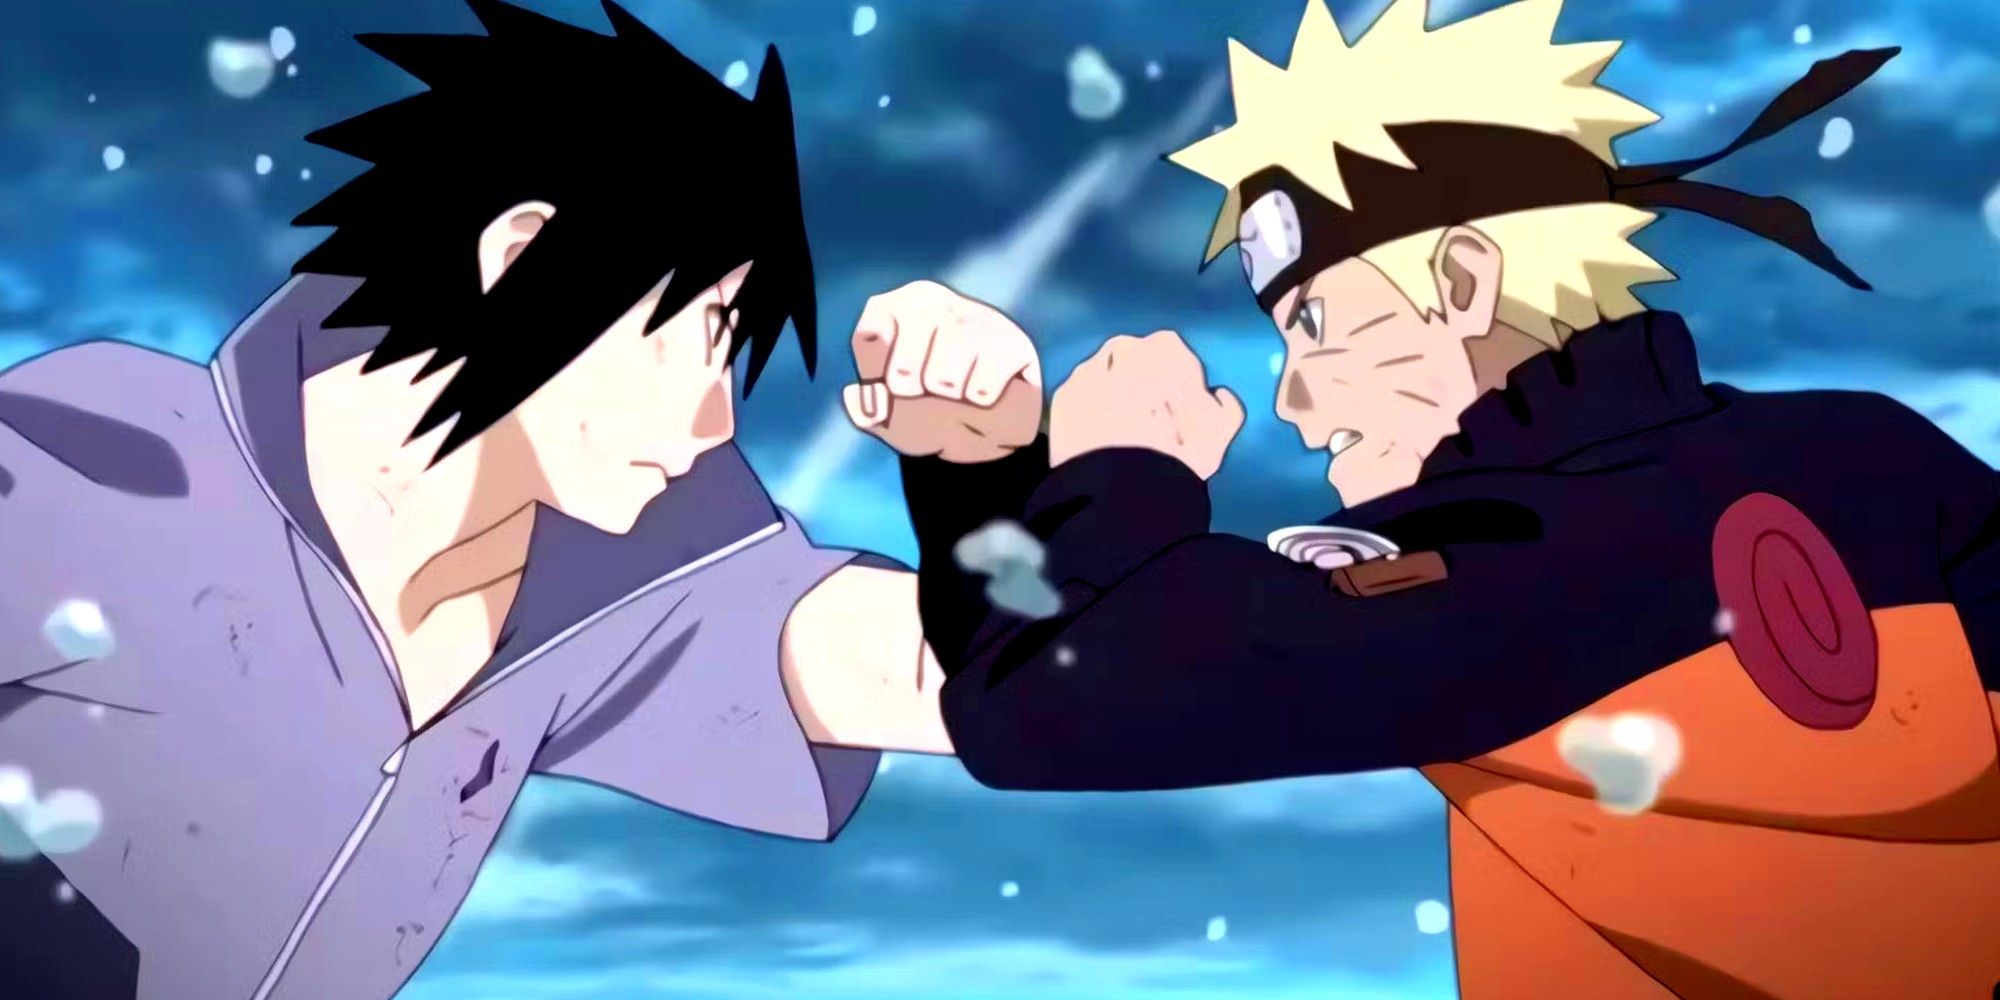 Captura de tela de Naruto Shippuden mostra Naruto e Sasuke travando os punhos no primeiro ataque em sua batalha final do episódio 476